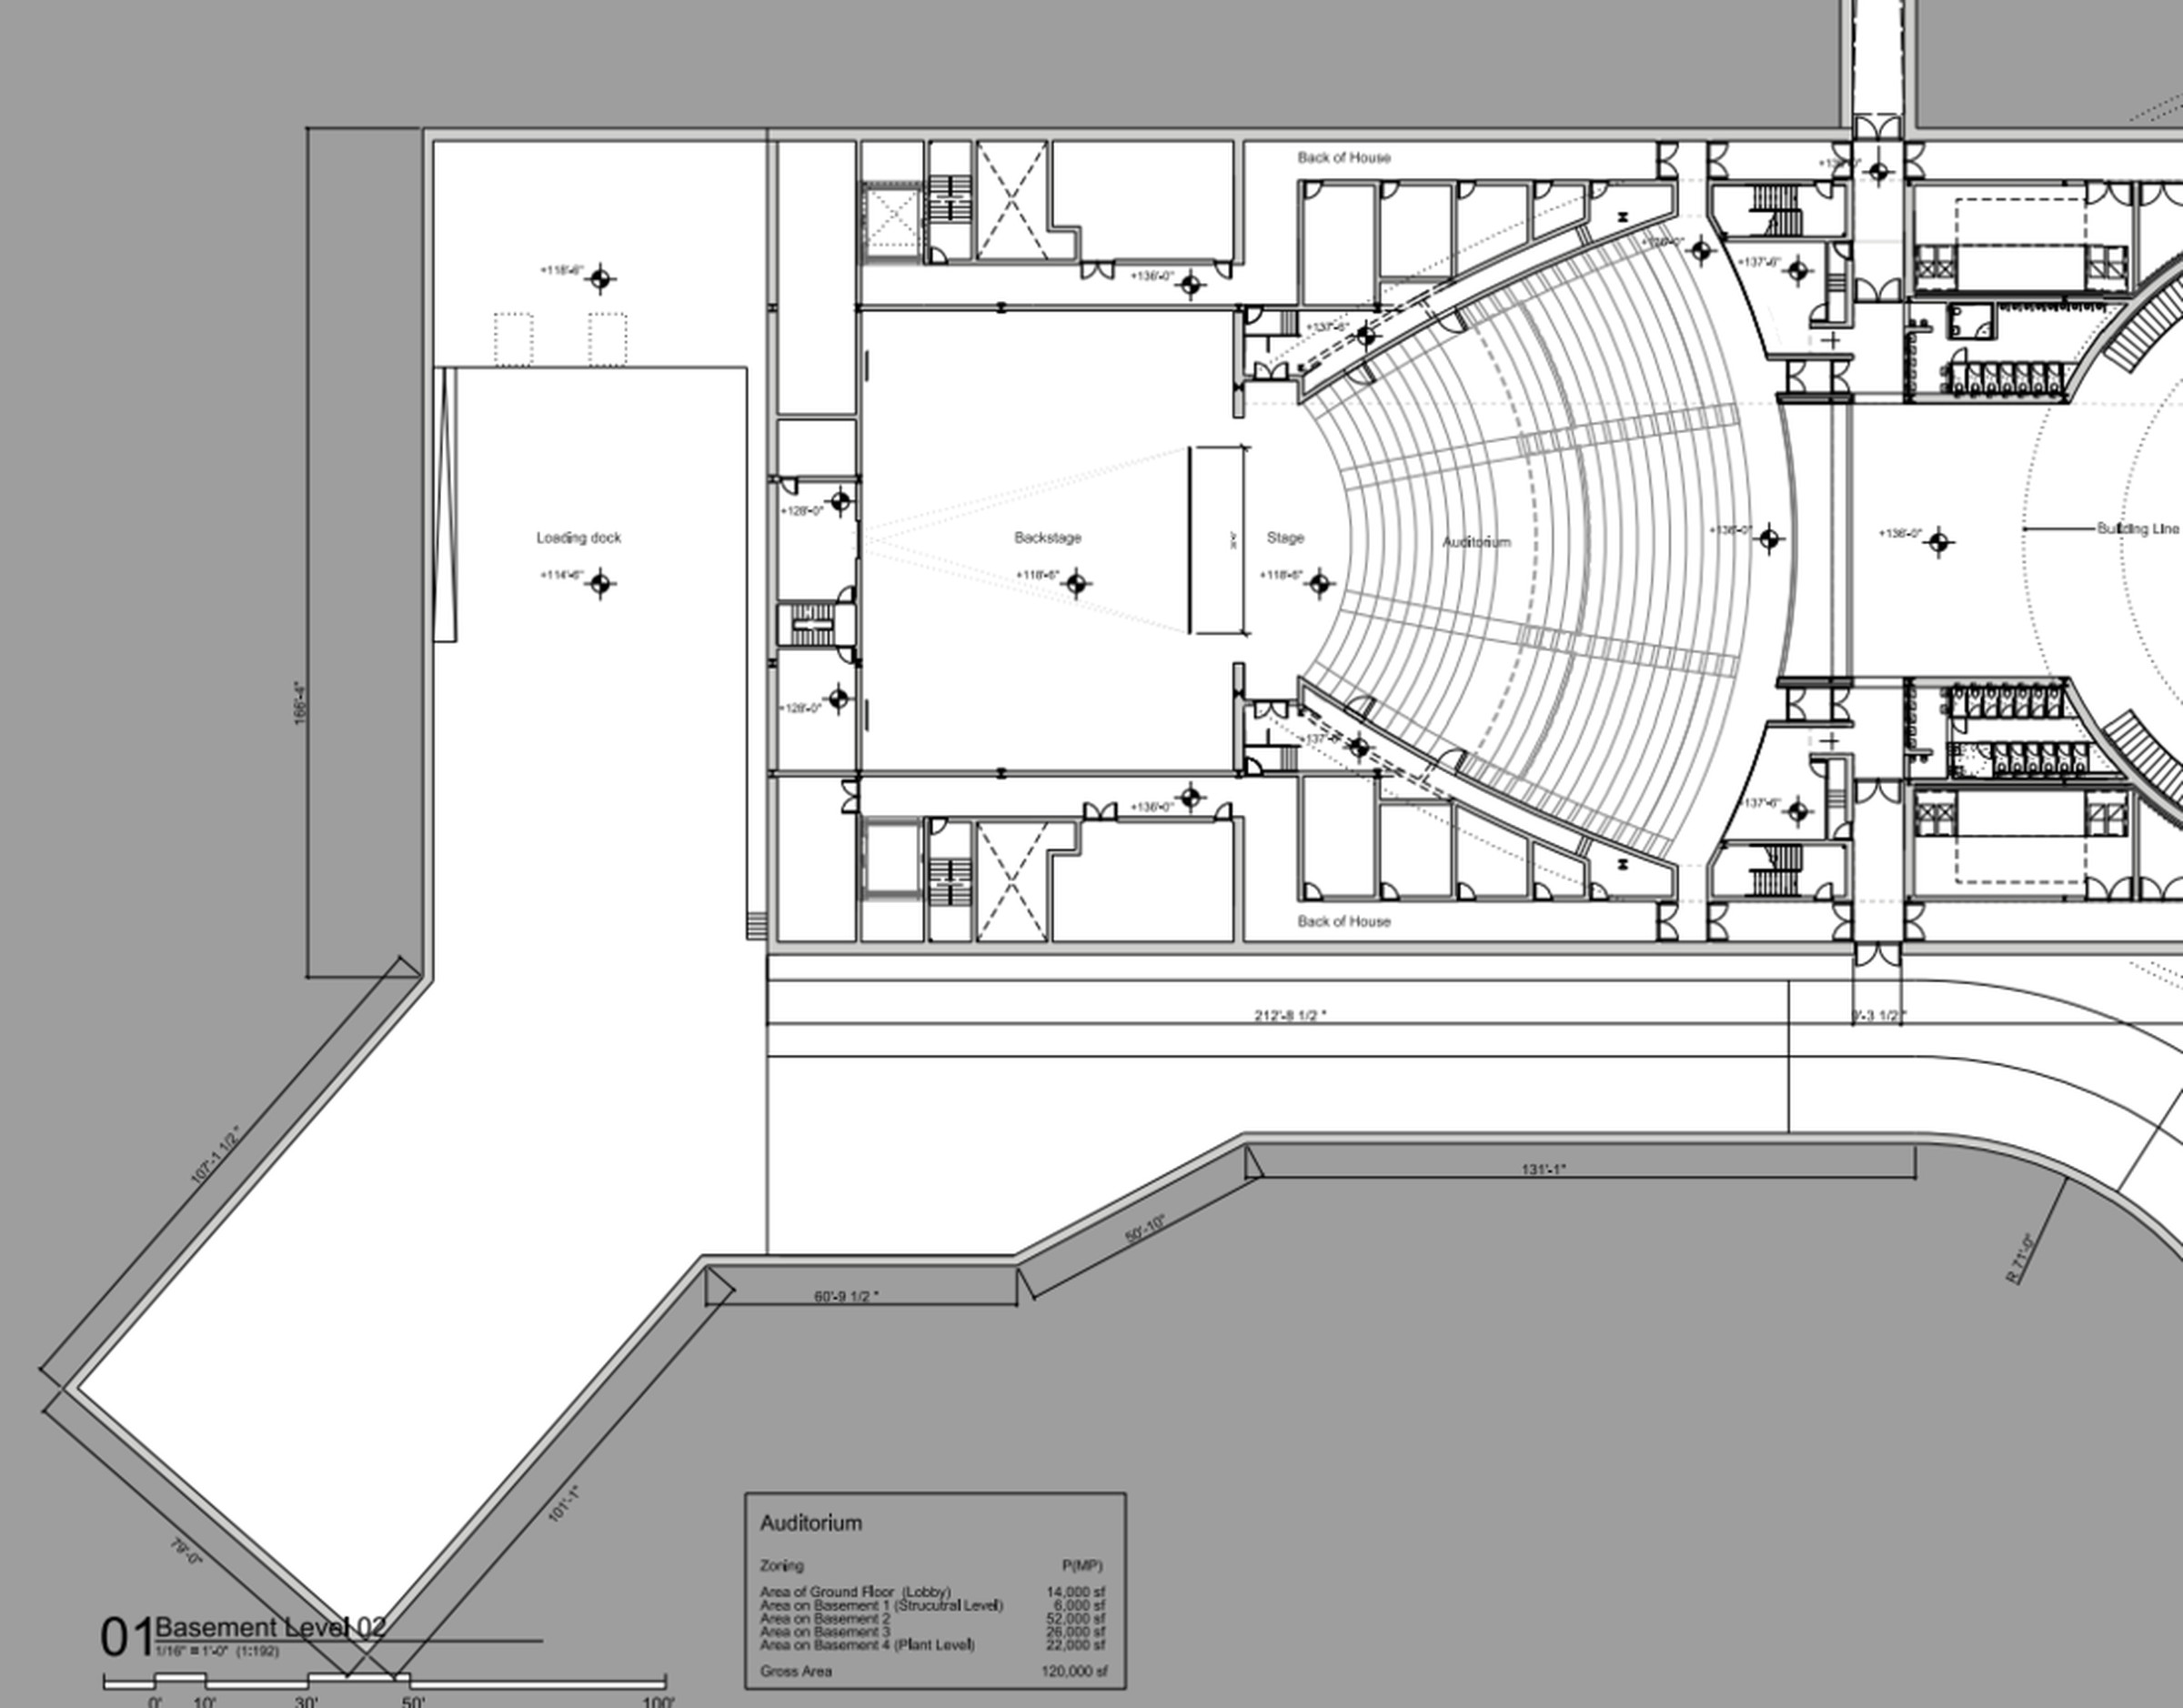 Apple Campus 2 floor plans